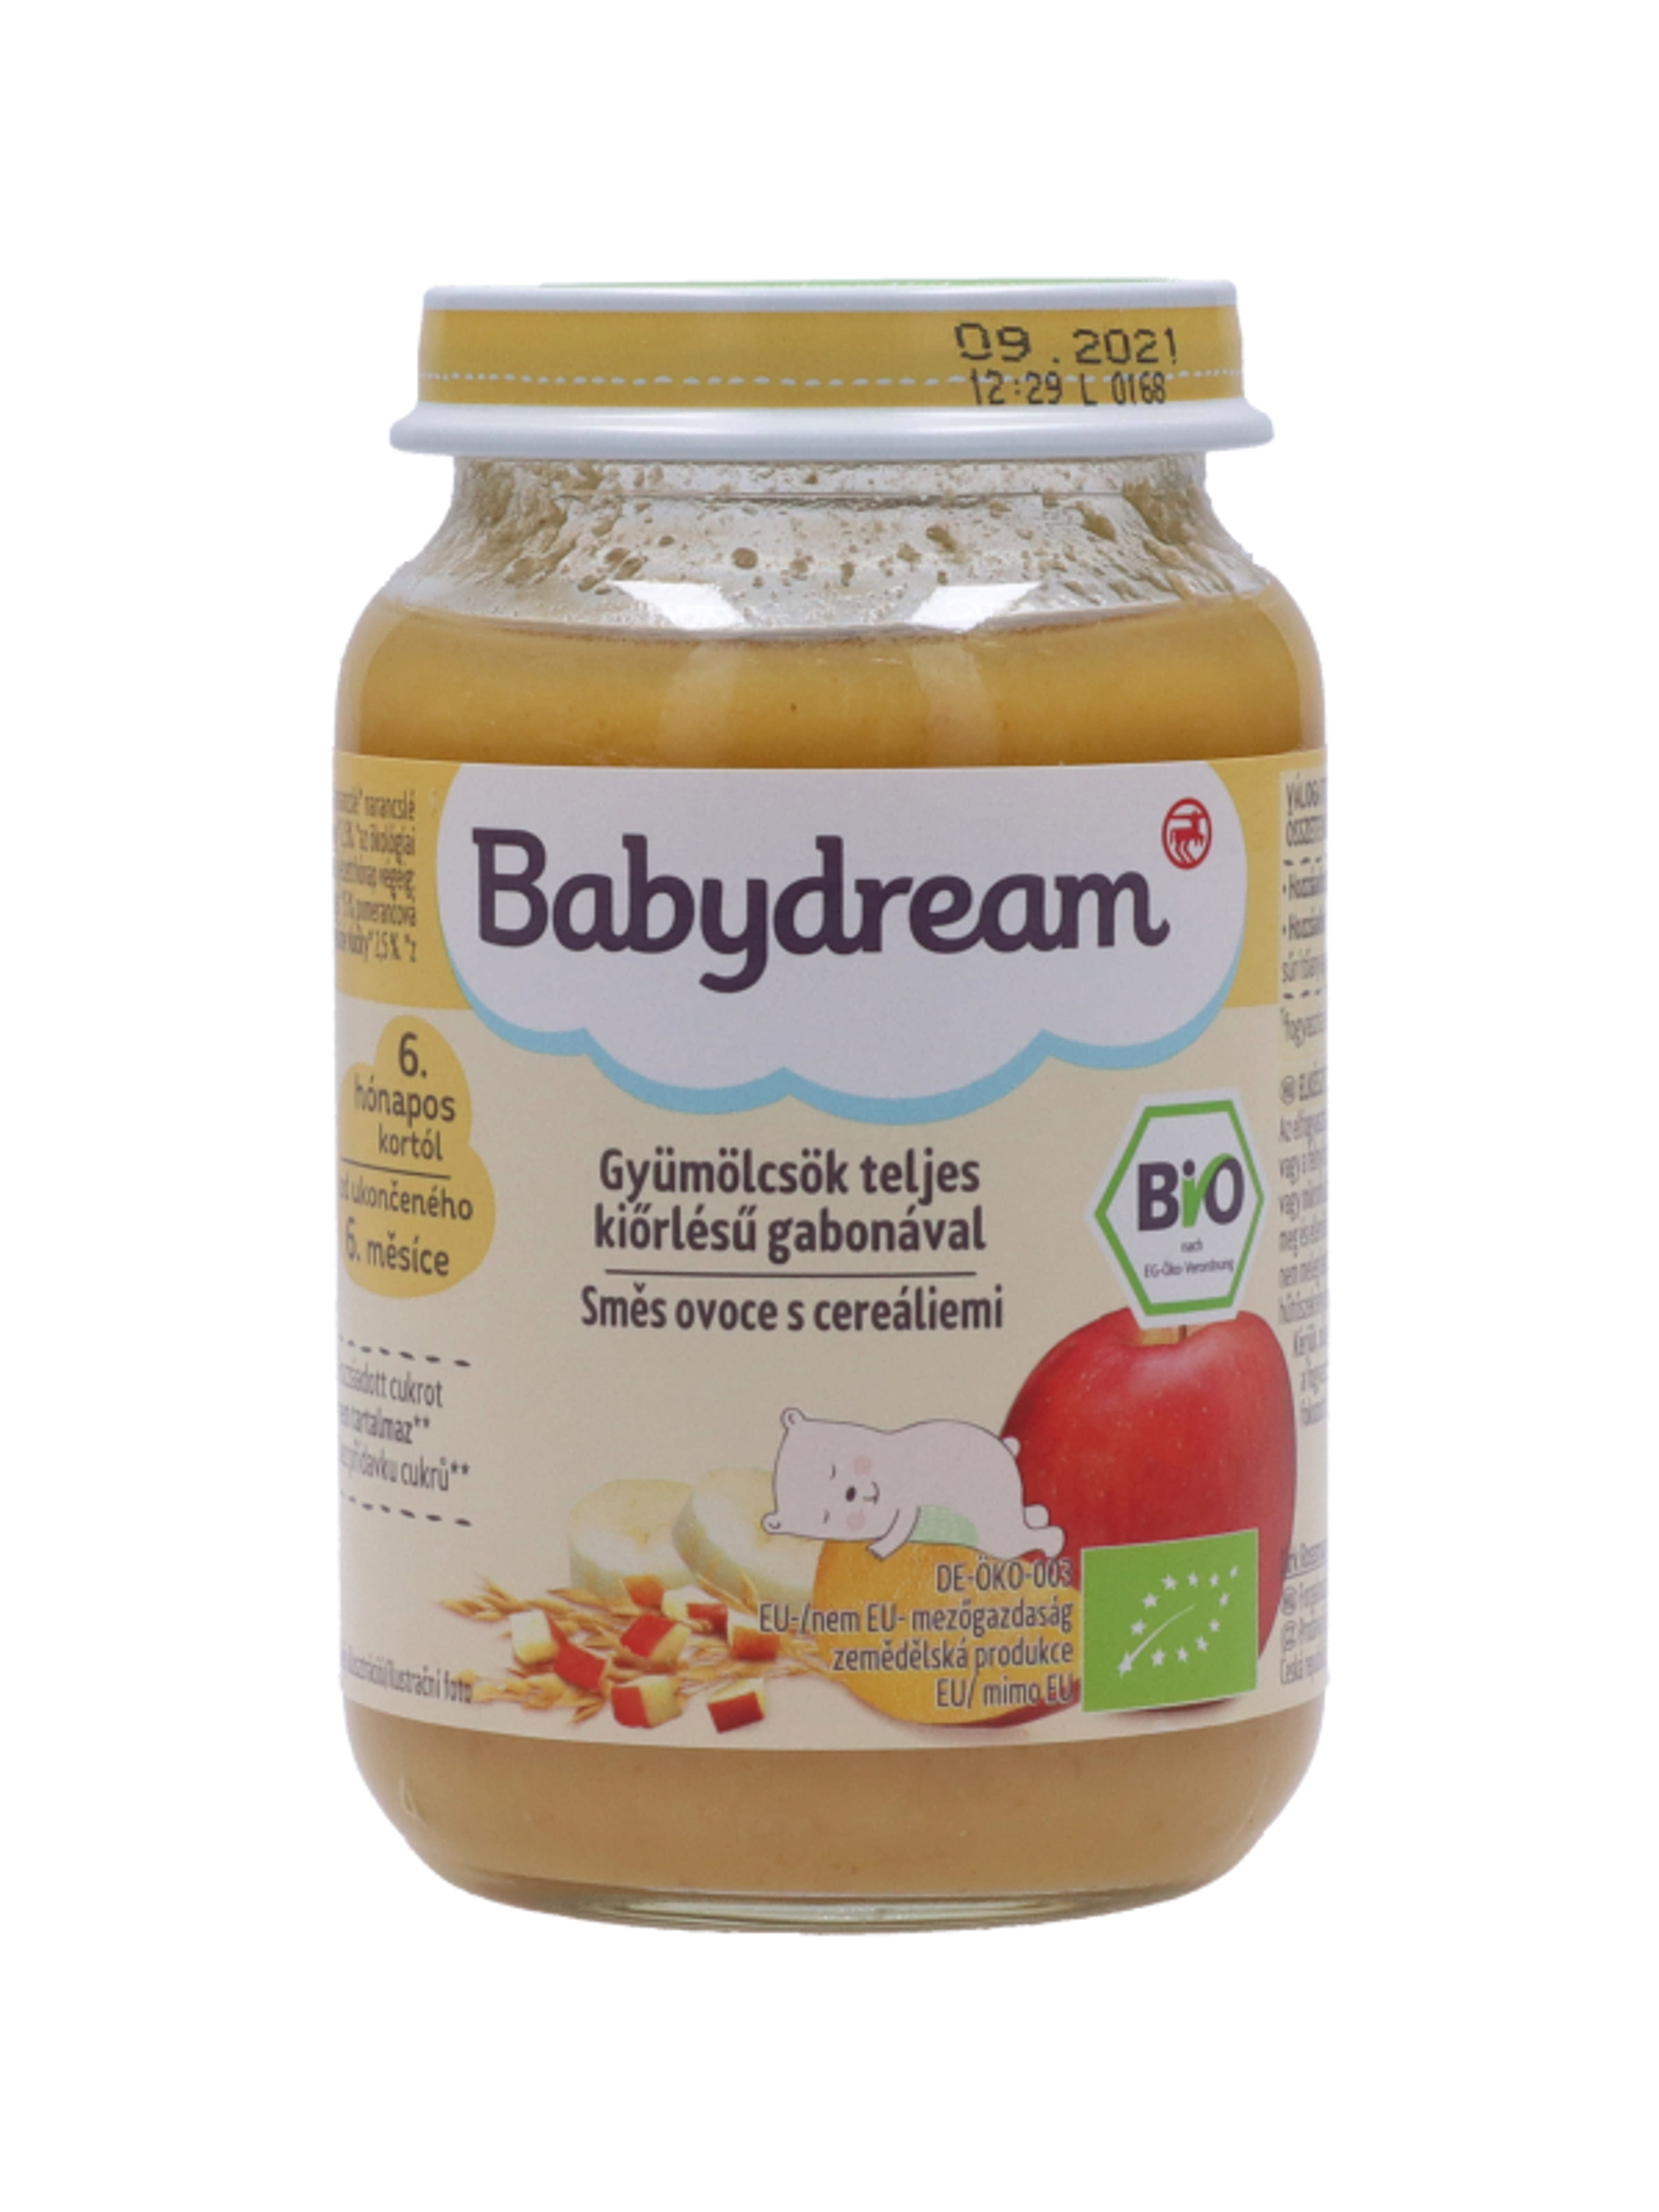 Babydream bébiétel vegyes gyümölcs gabona ízesítéssel - 190 g - 5 hónapos kortól ajánlott